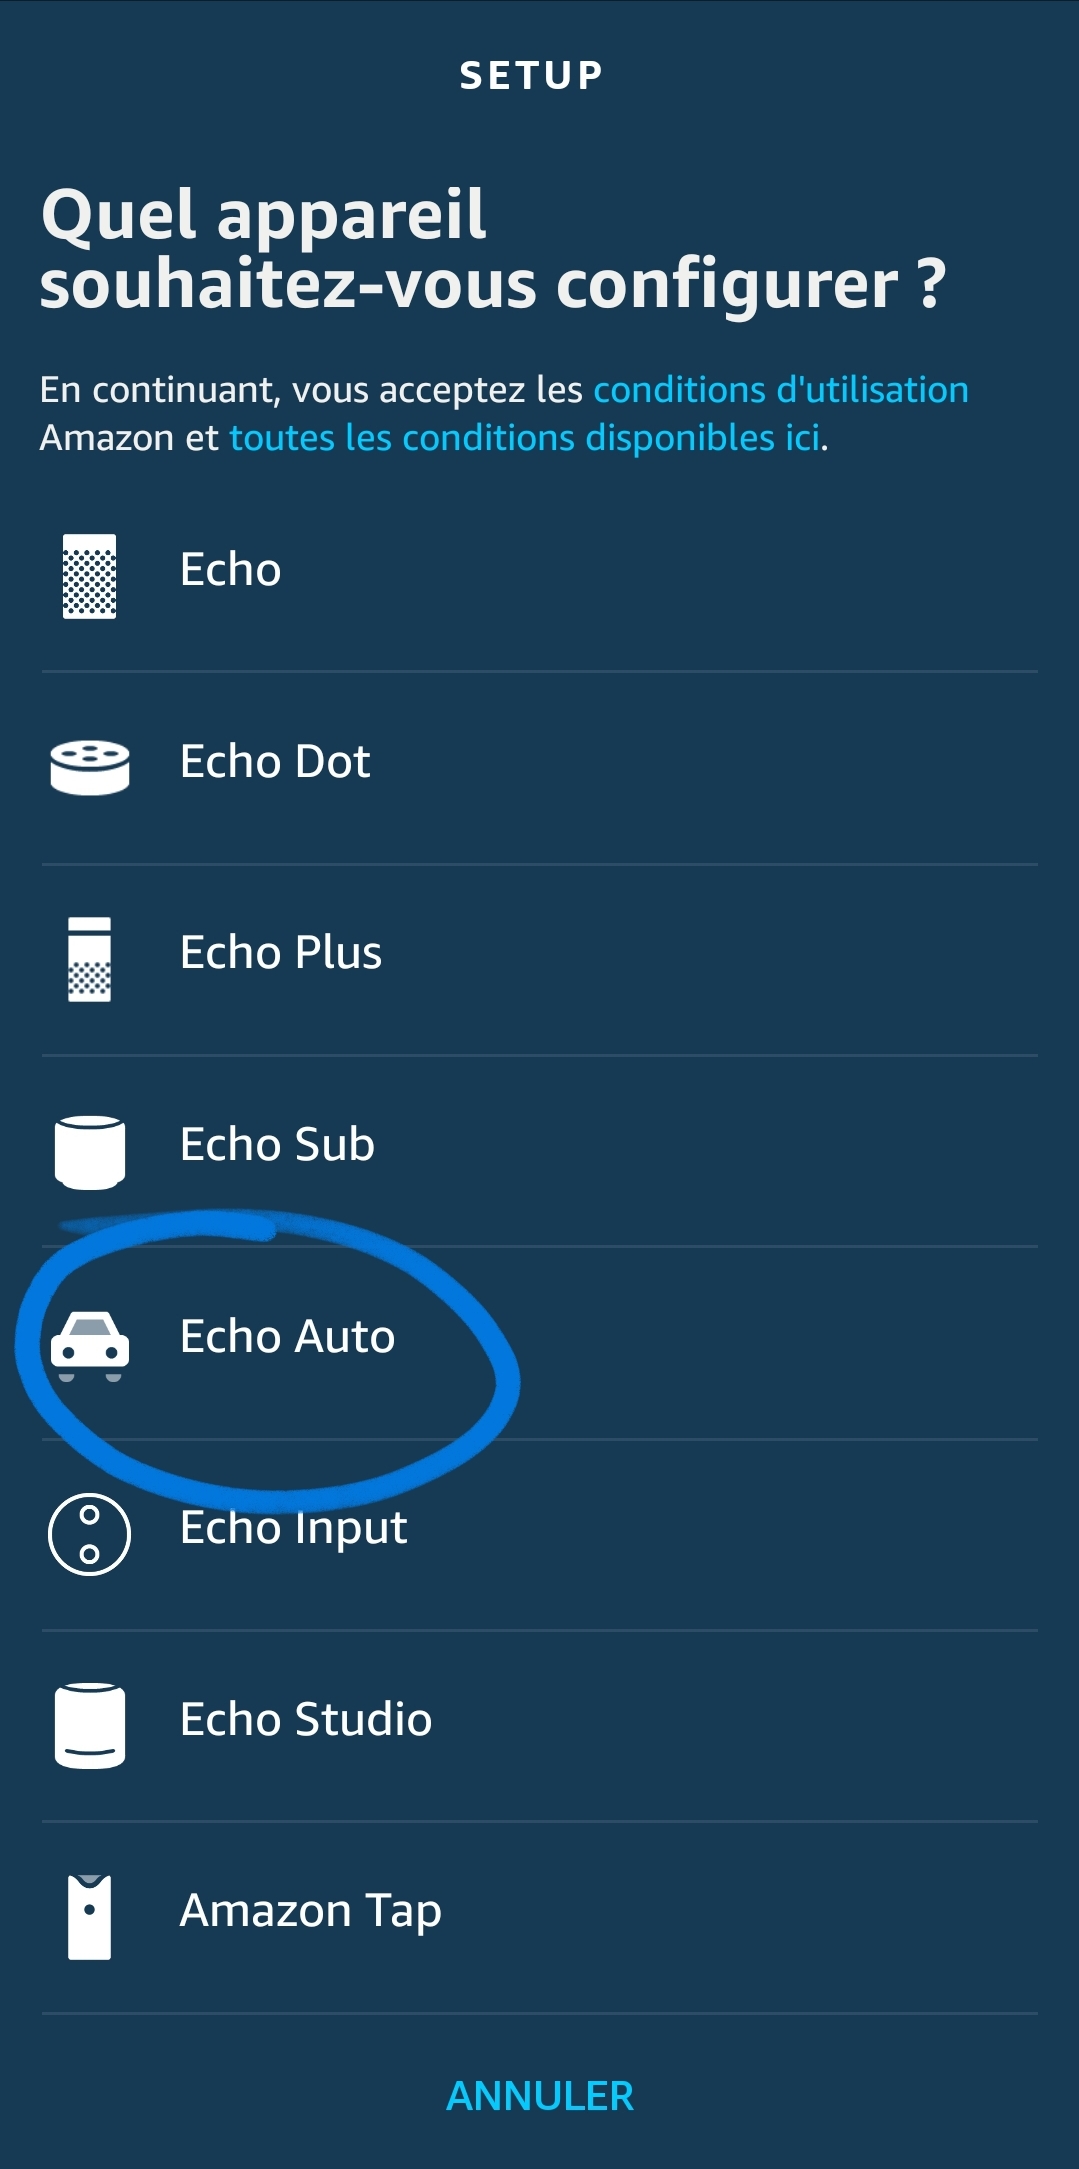 L' Echo Auto enregistre déjà un nombre impressionnant de précommandes